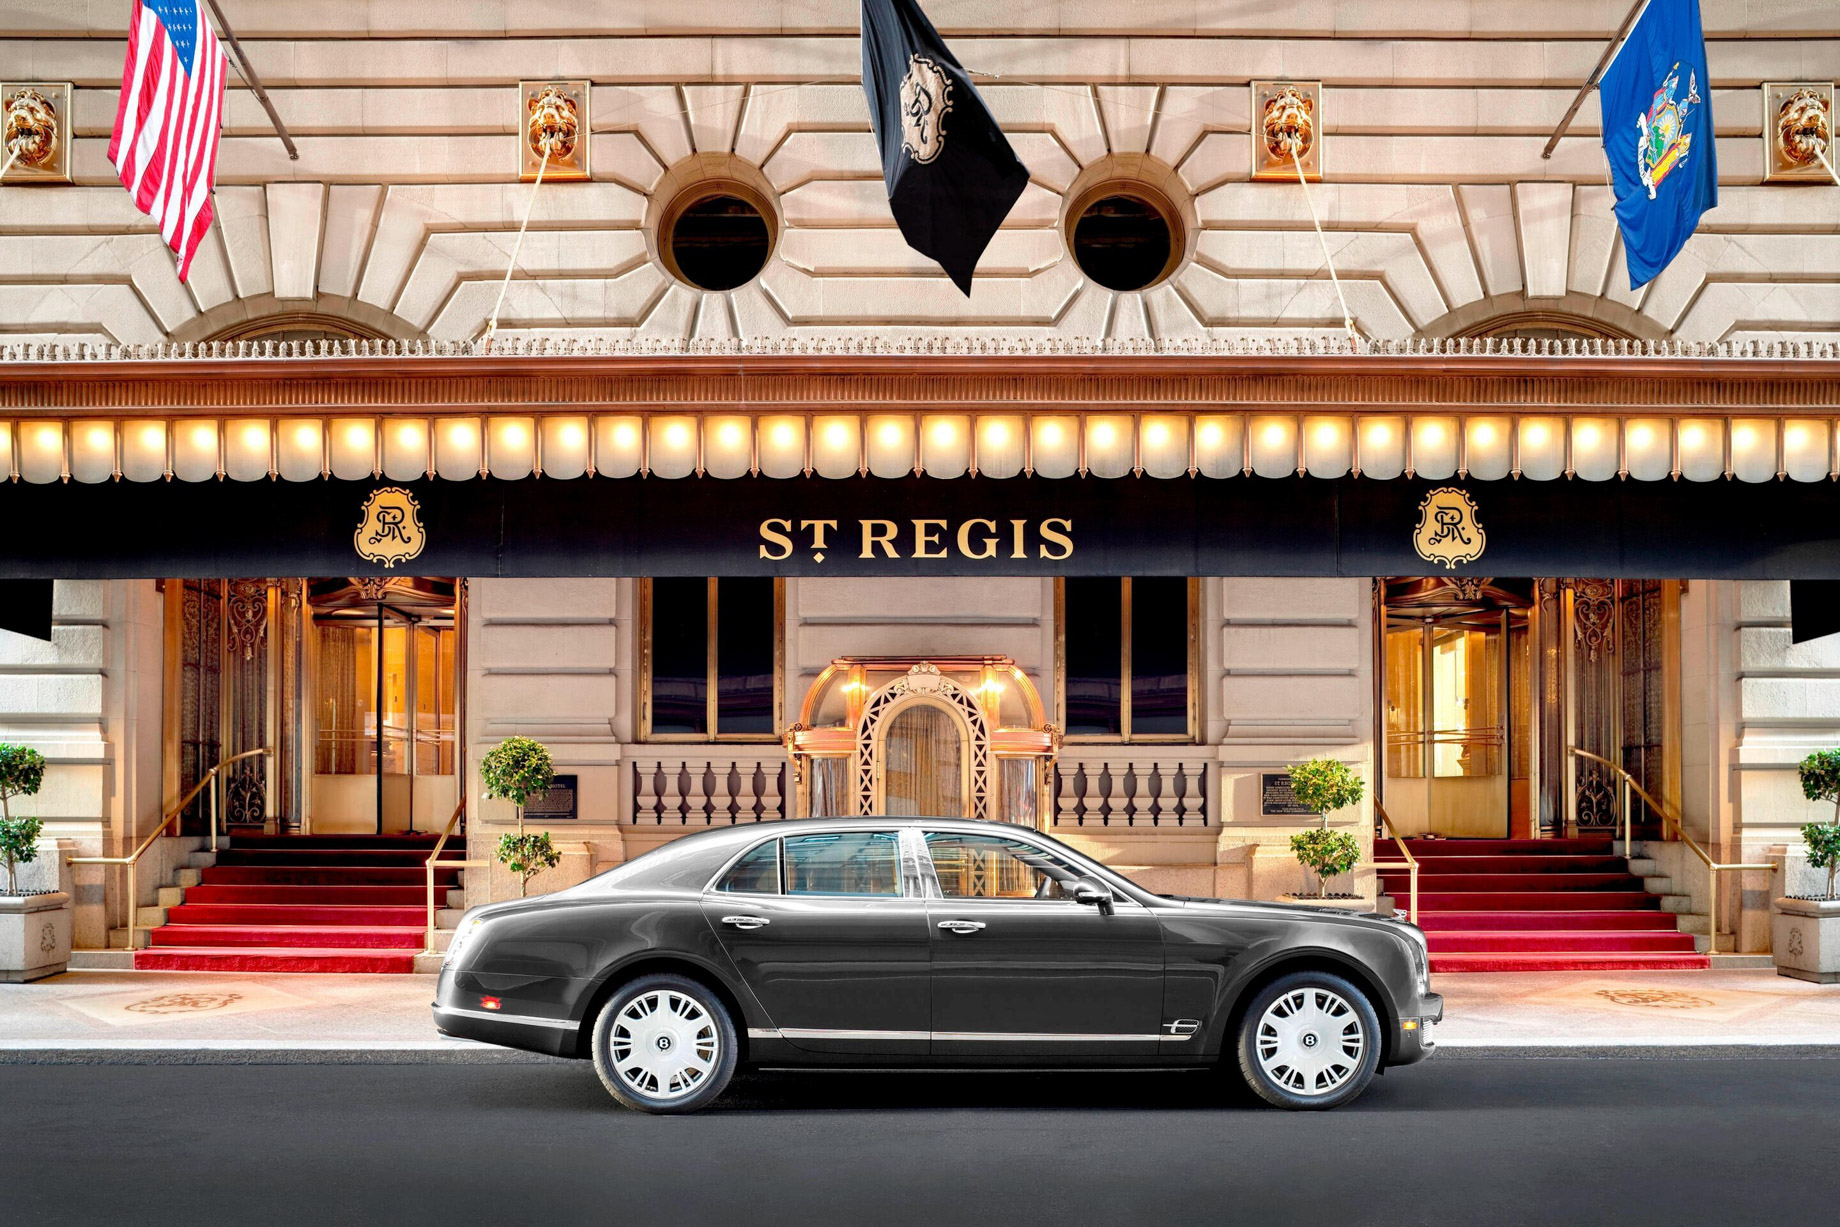 The St. Regis New York Luxury Hotel - New York, NY, USA